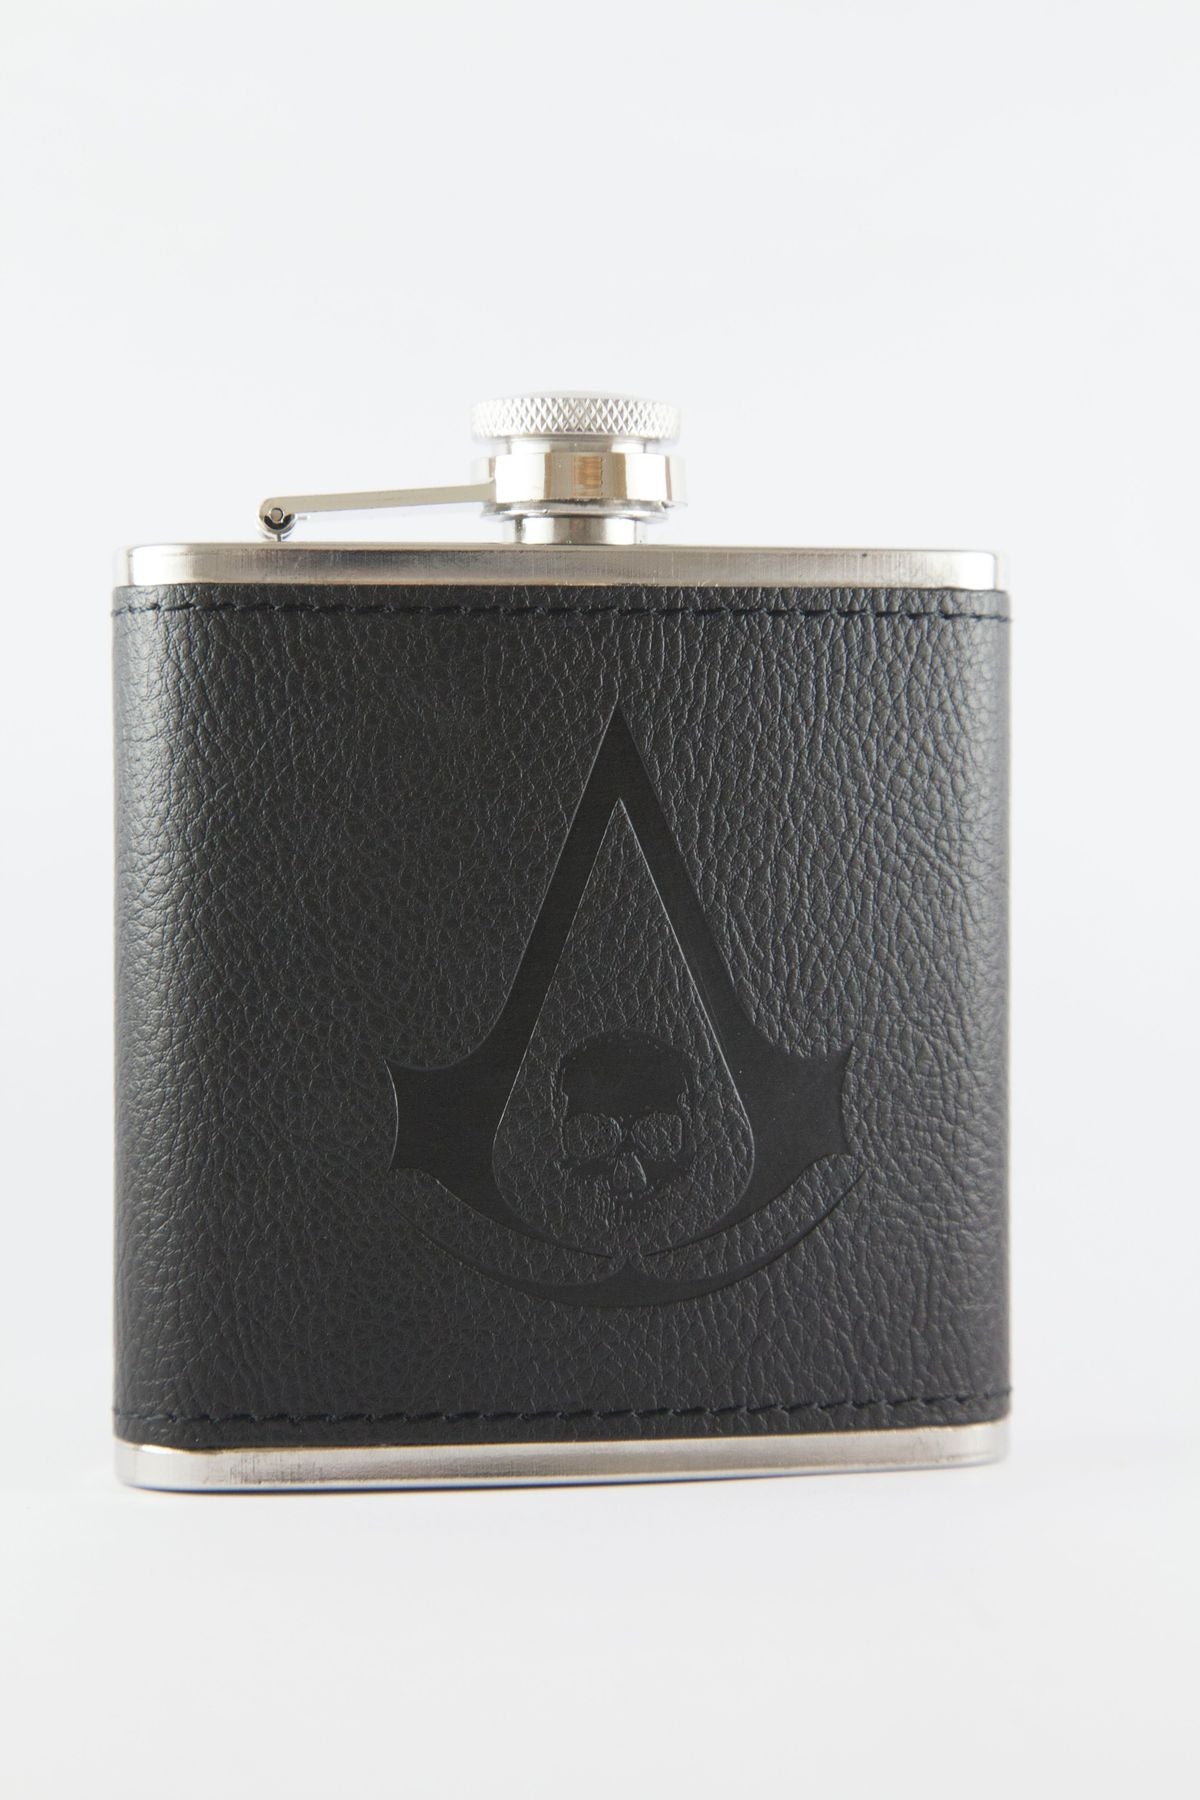 Assassin's Creed Black Flag Hip Flask Official Ubisoft